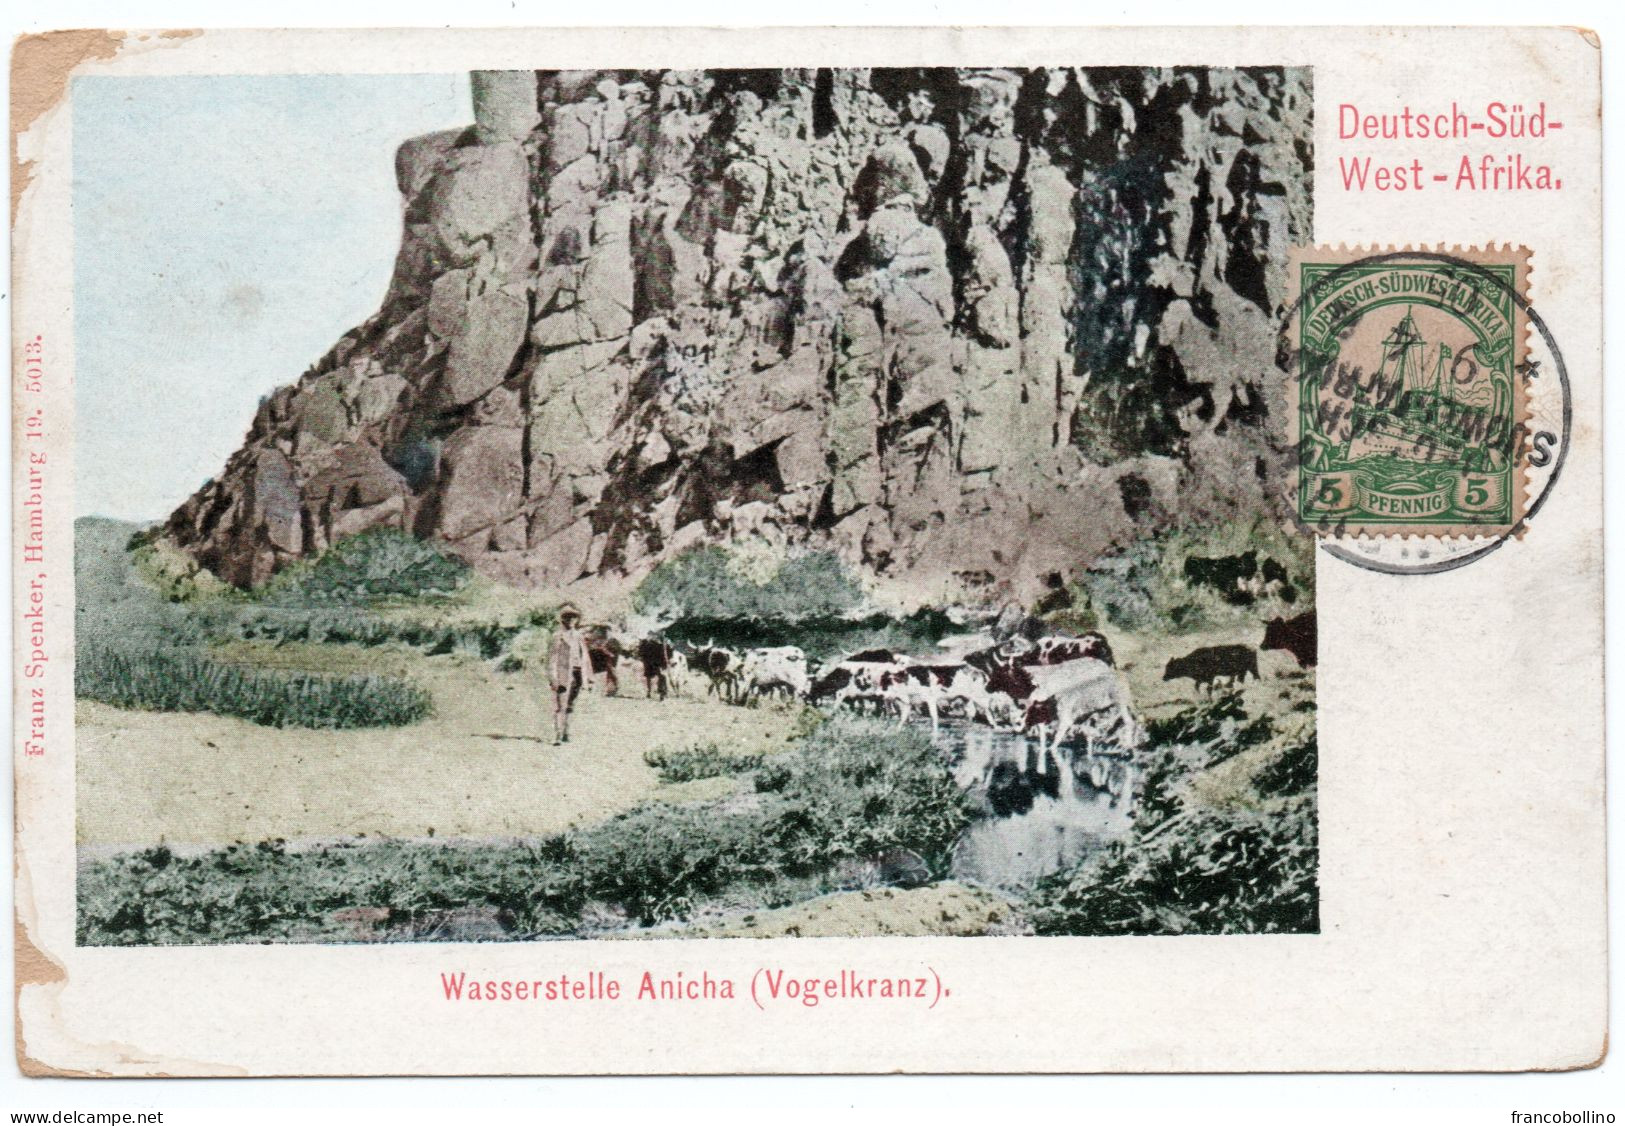 SOUTHWEST GERMAN AFRICA / NAMIBIA -WASSERSTELLE ANICHA (VOGELKRANZ) - WINDHUK CANCEL 1905 - Deutsch-Südwestafrika